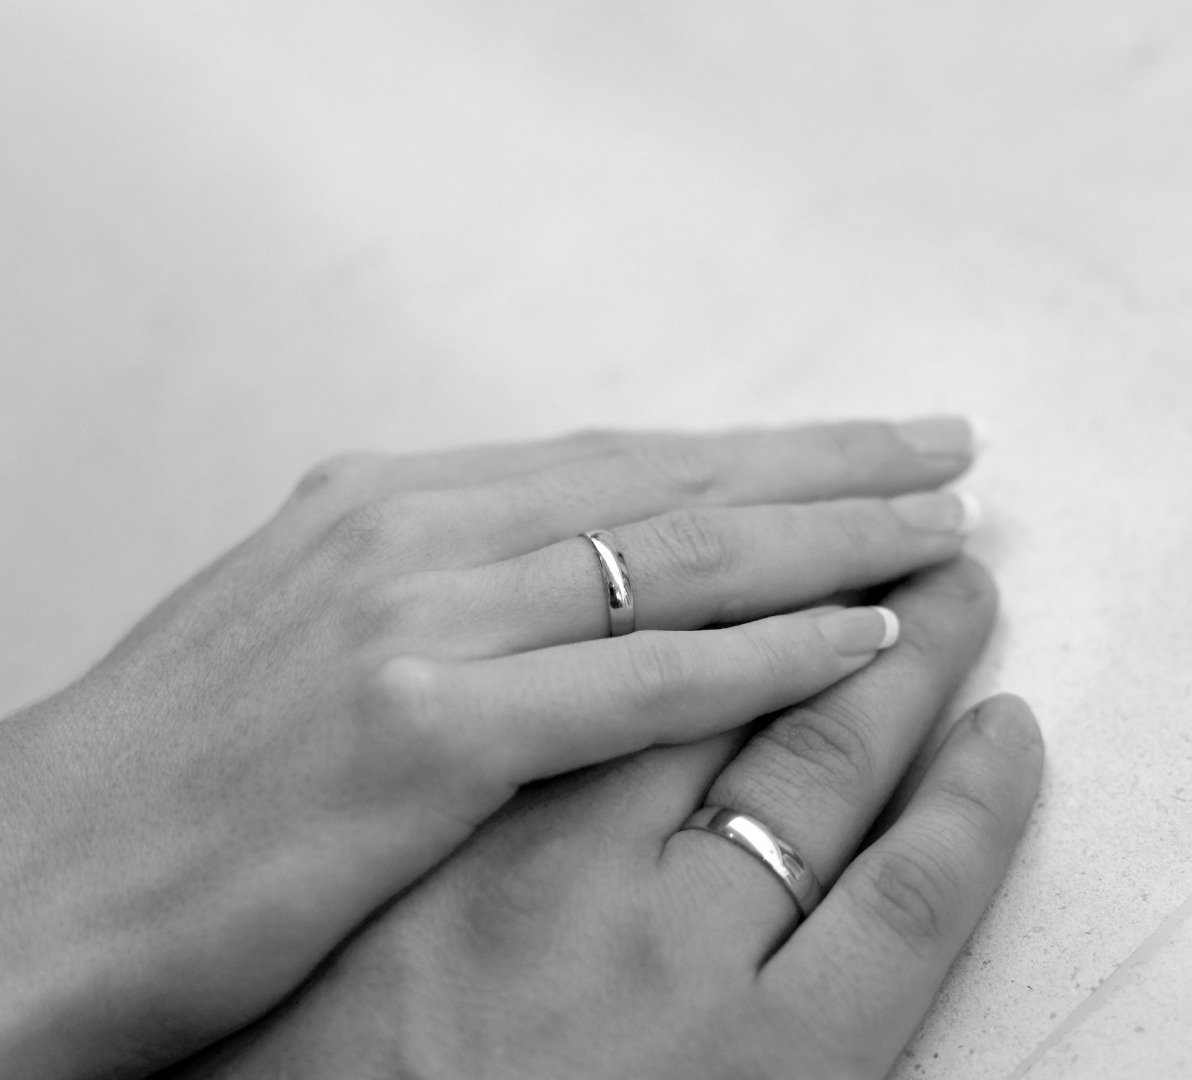 Обручальное кольцо на руке парня и девушки